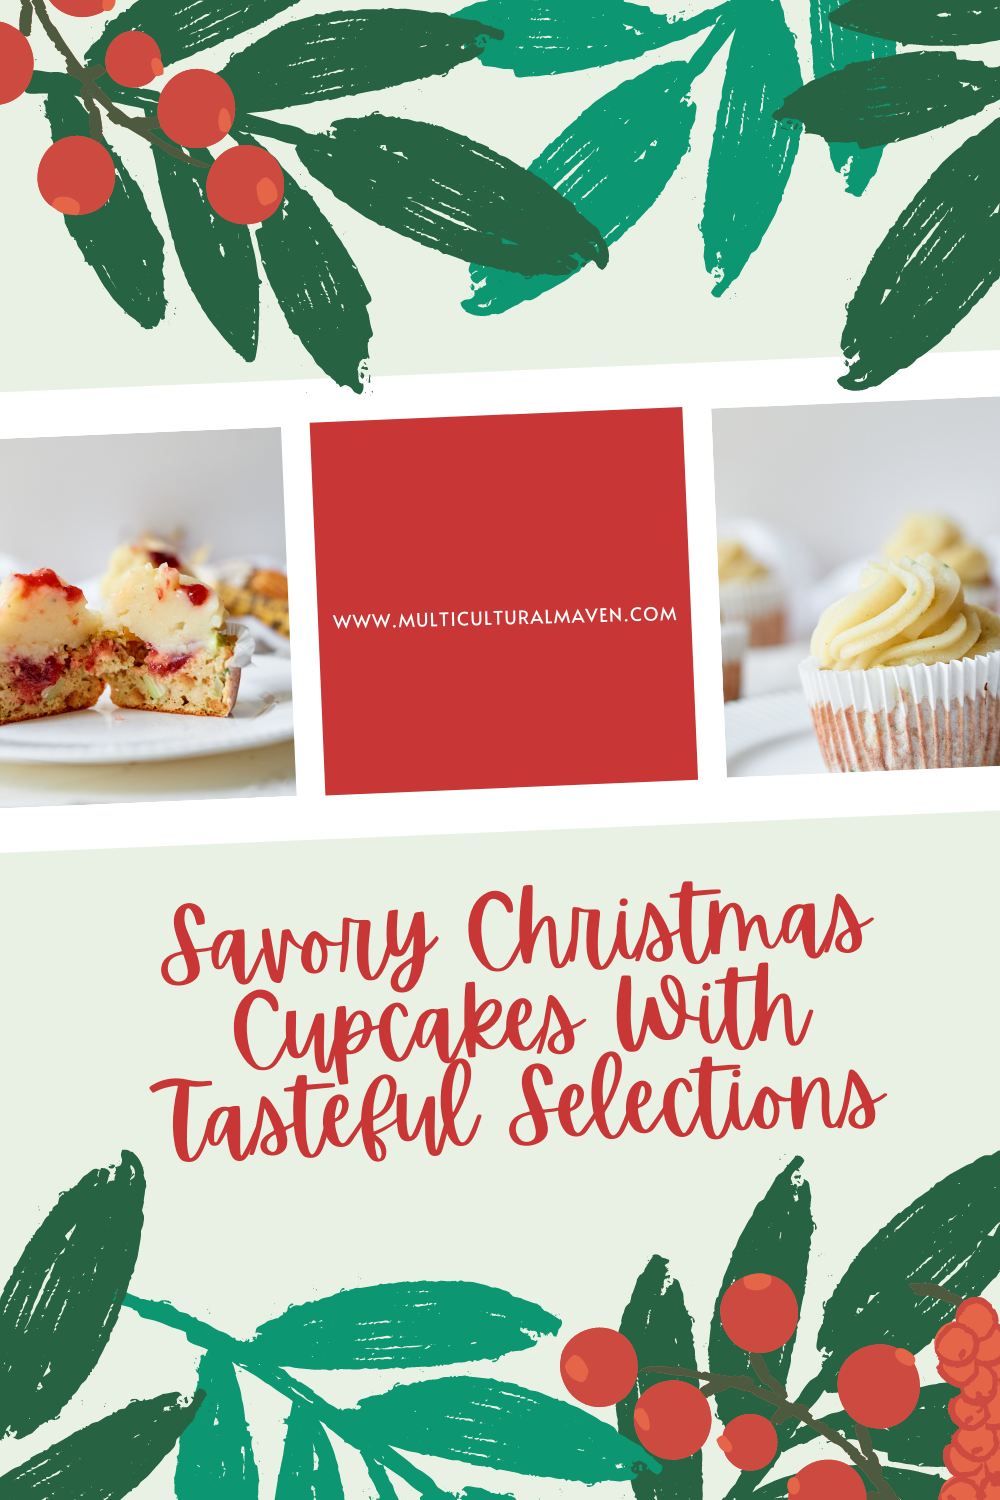 Tasteful Selections savory Christmas cupcake